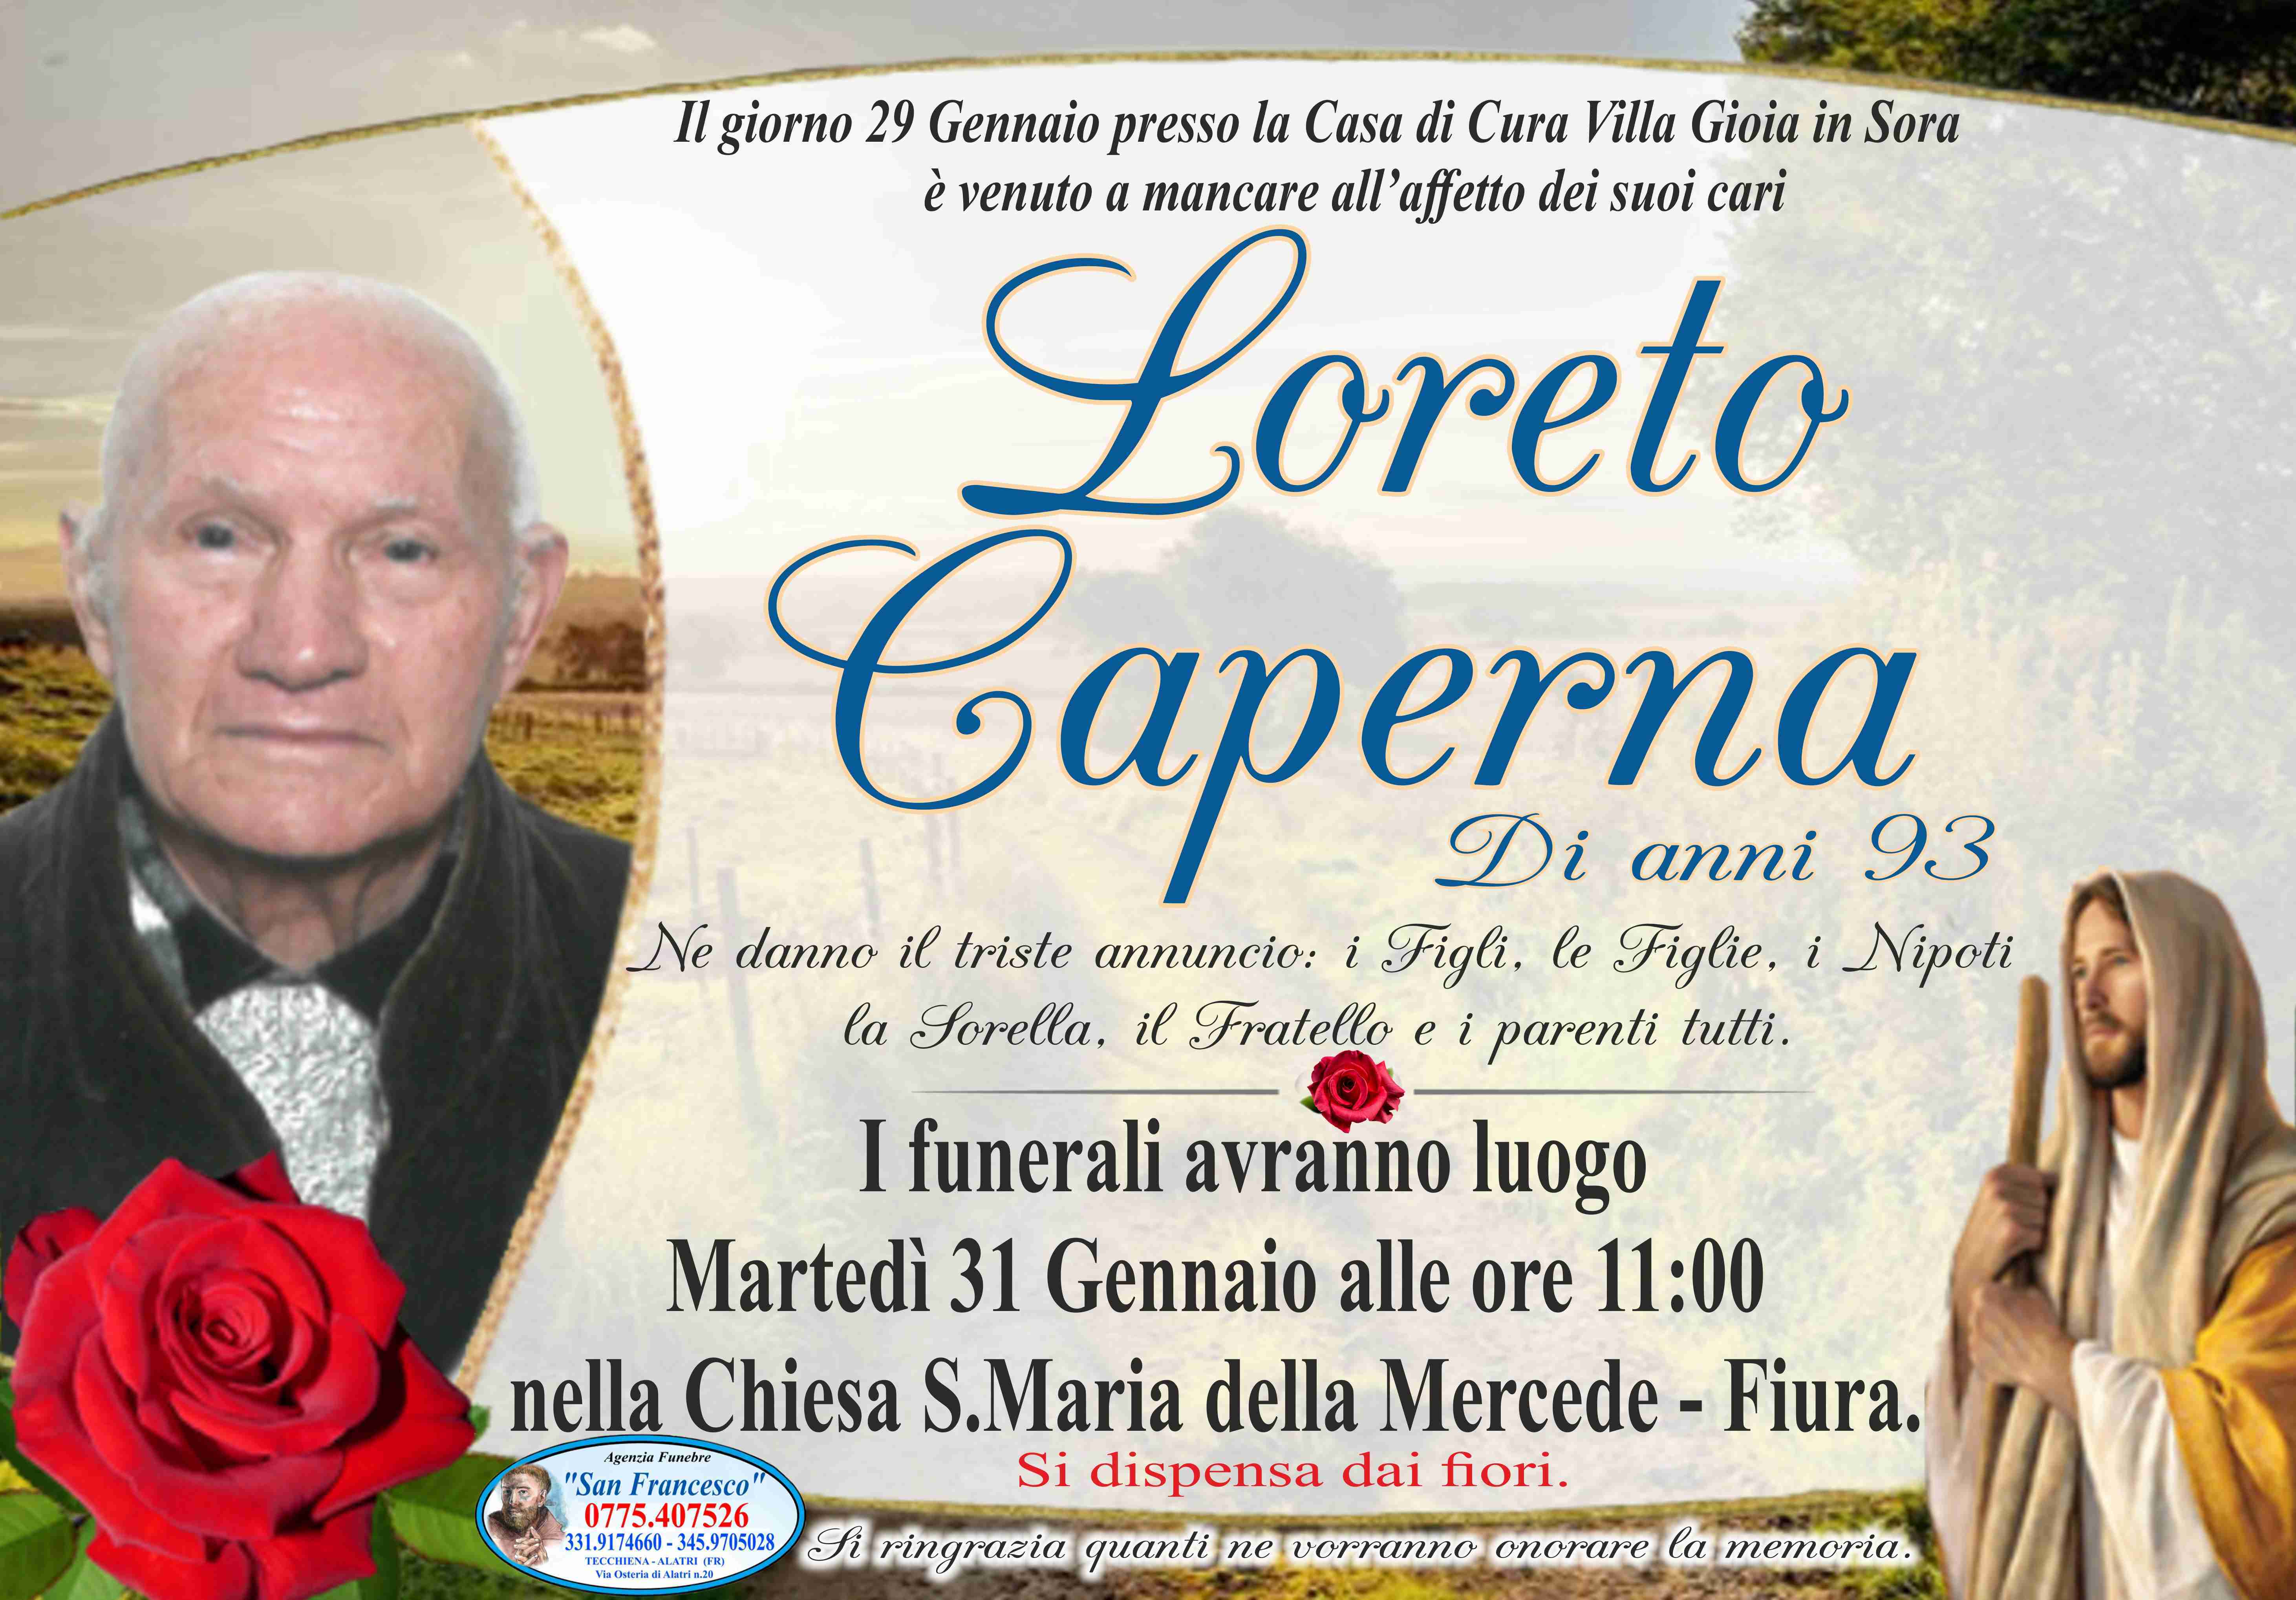 Loreto Caperna